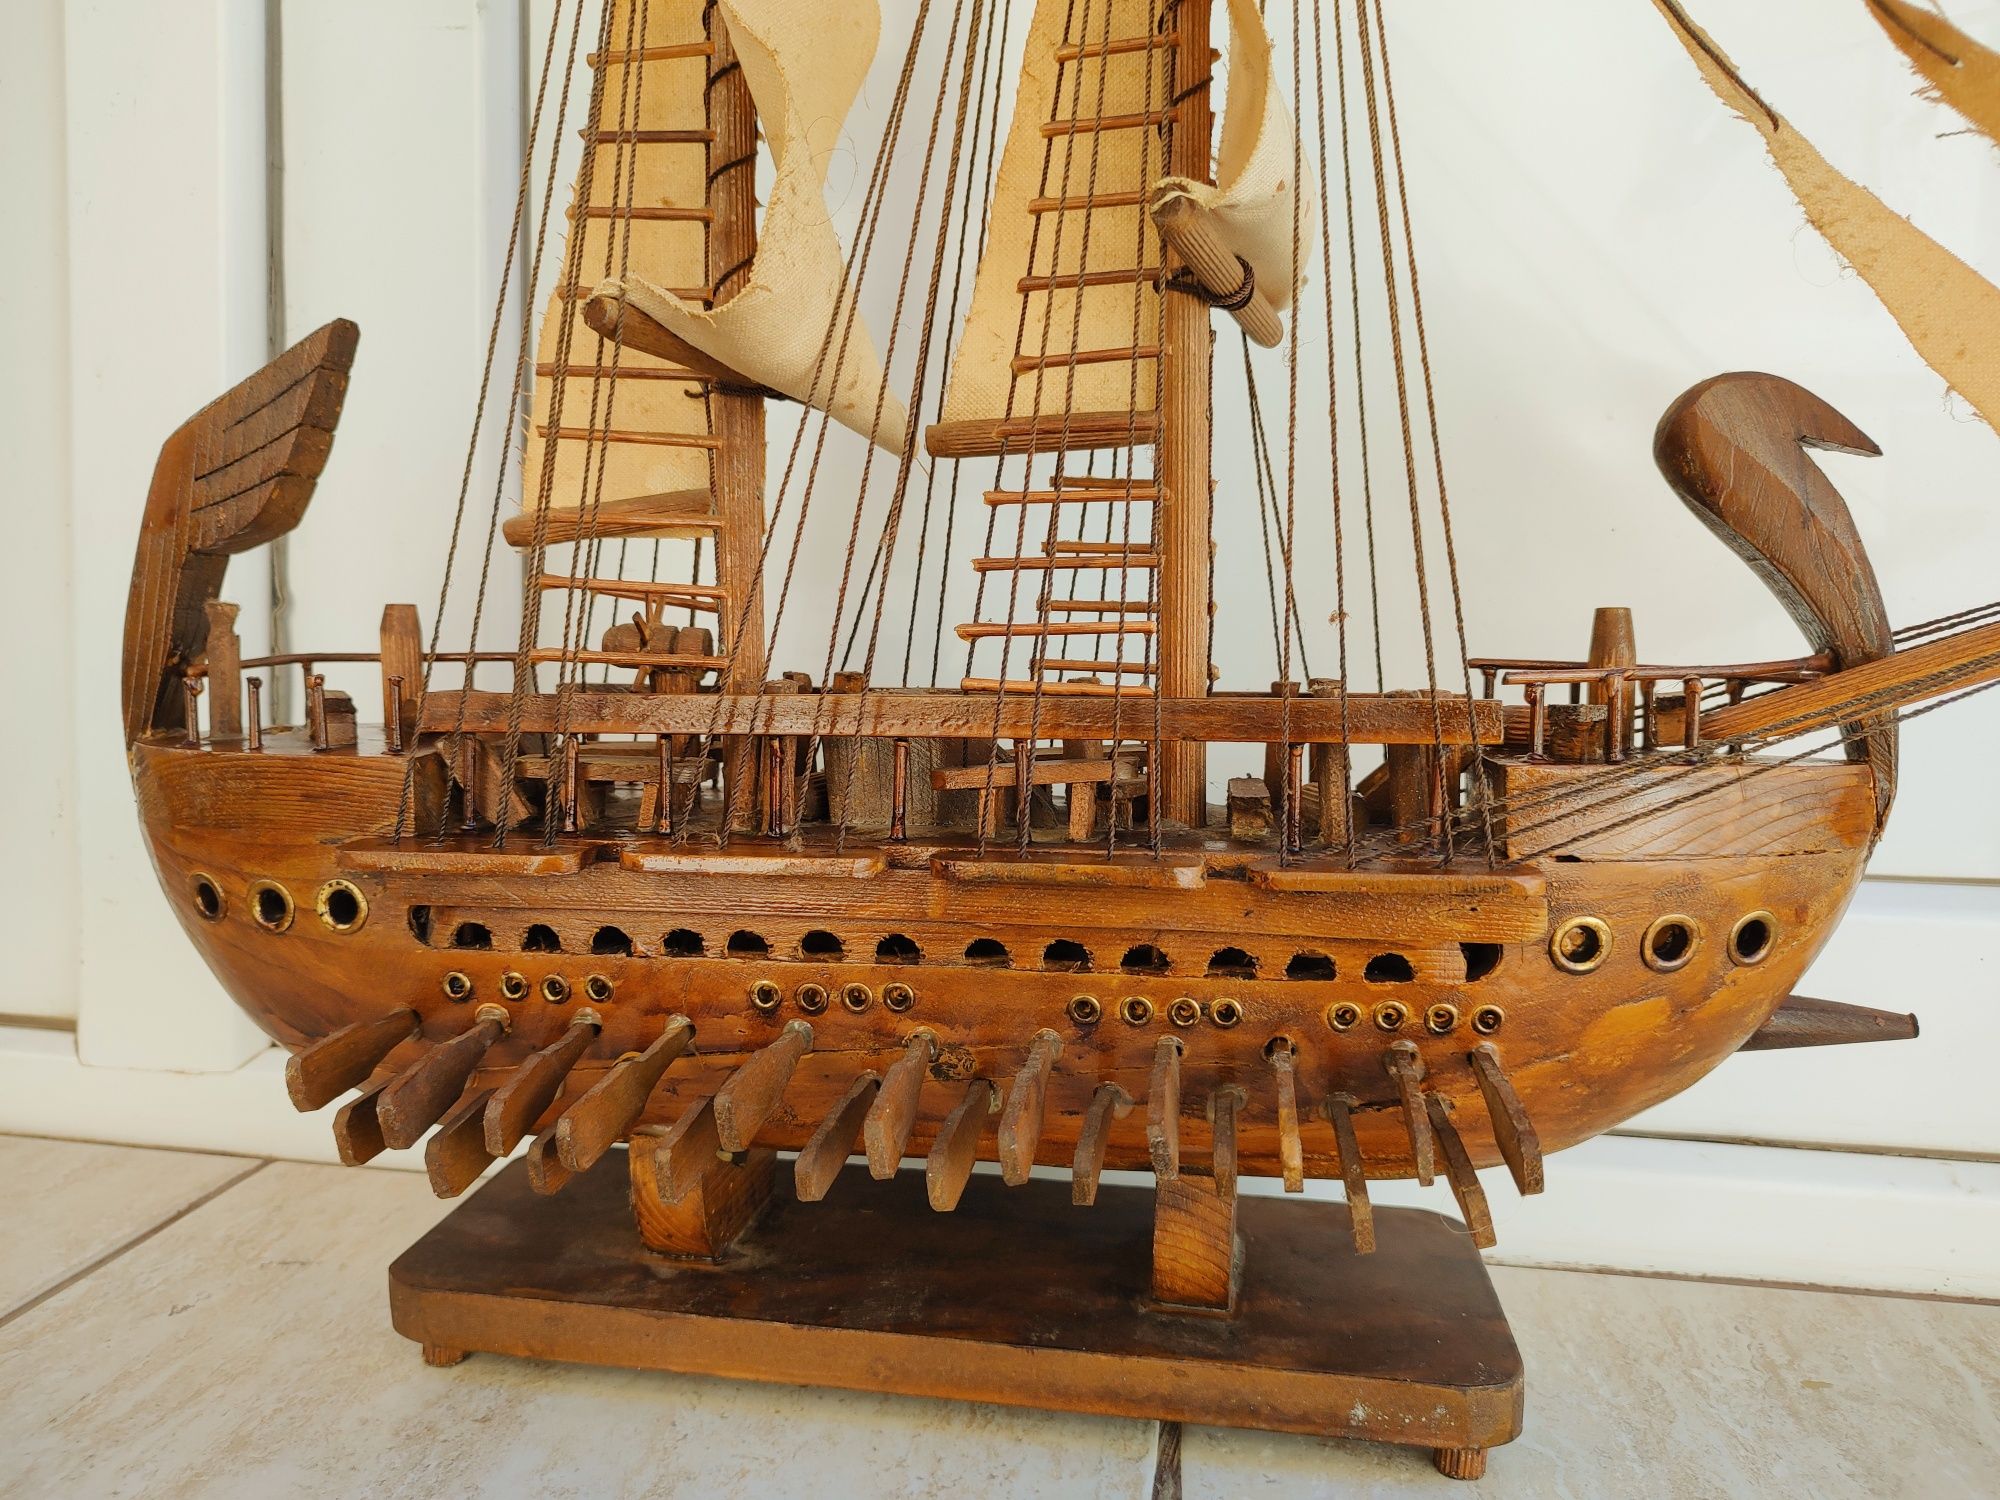 Macheta corabie cu panze lemn manufactura.64/60cm